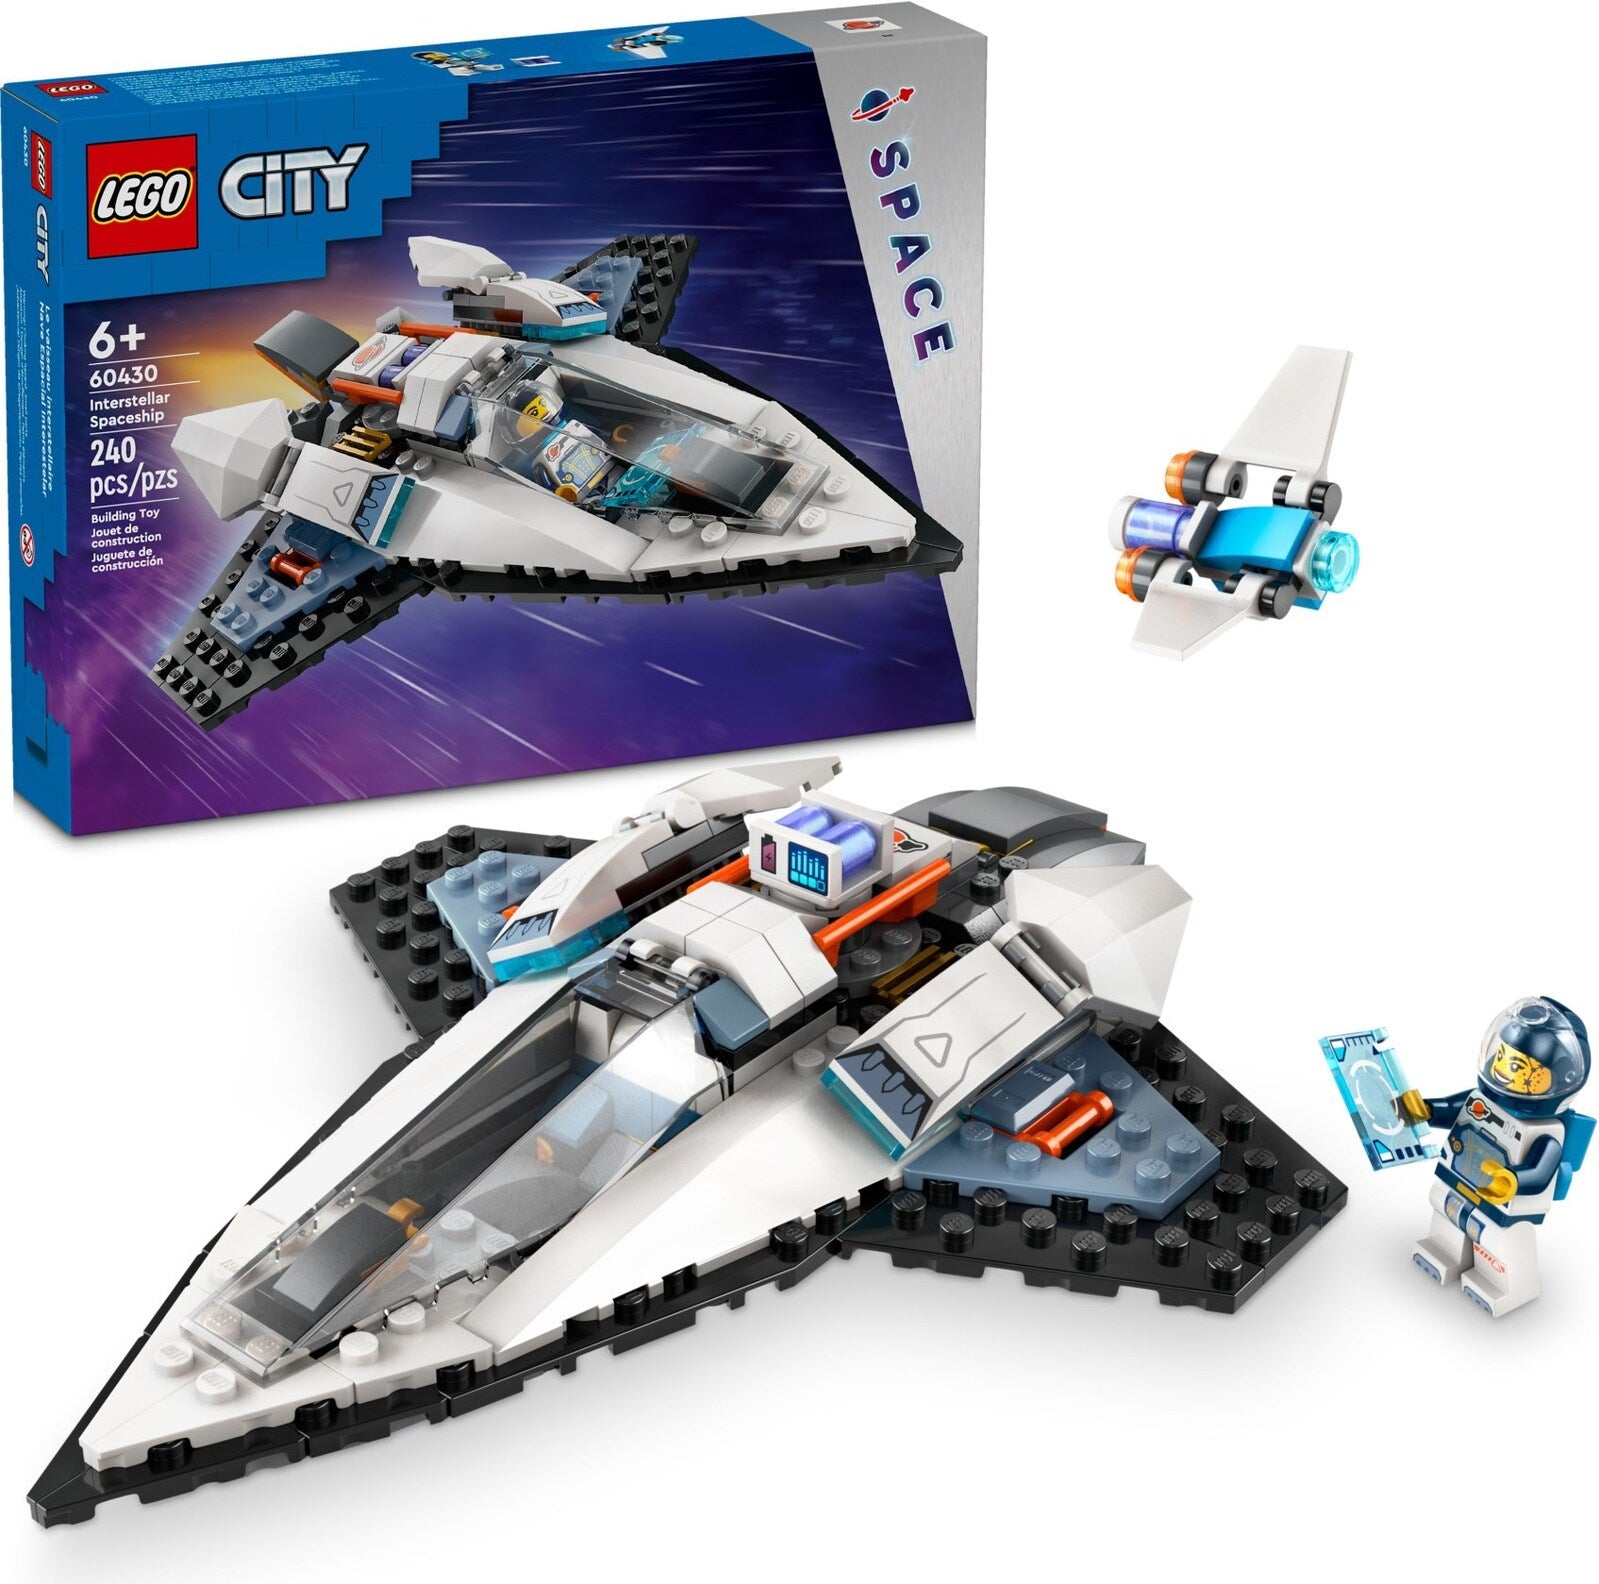 LEGO CITY 60430 INTERSTELLAR SPACESHIP